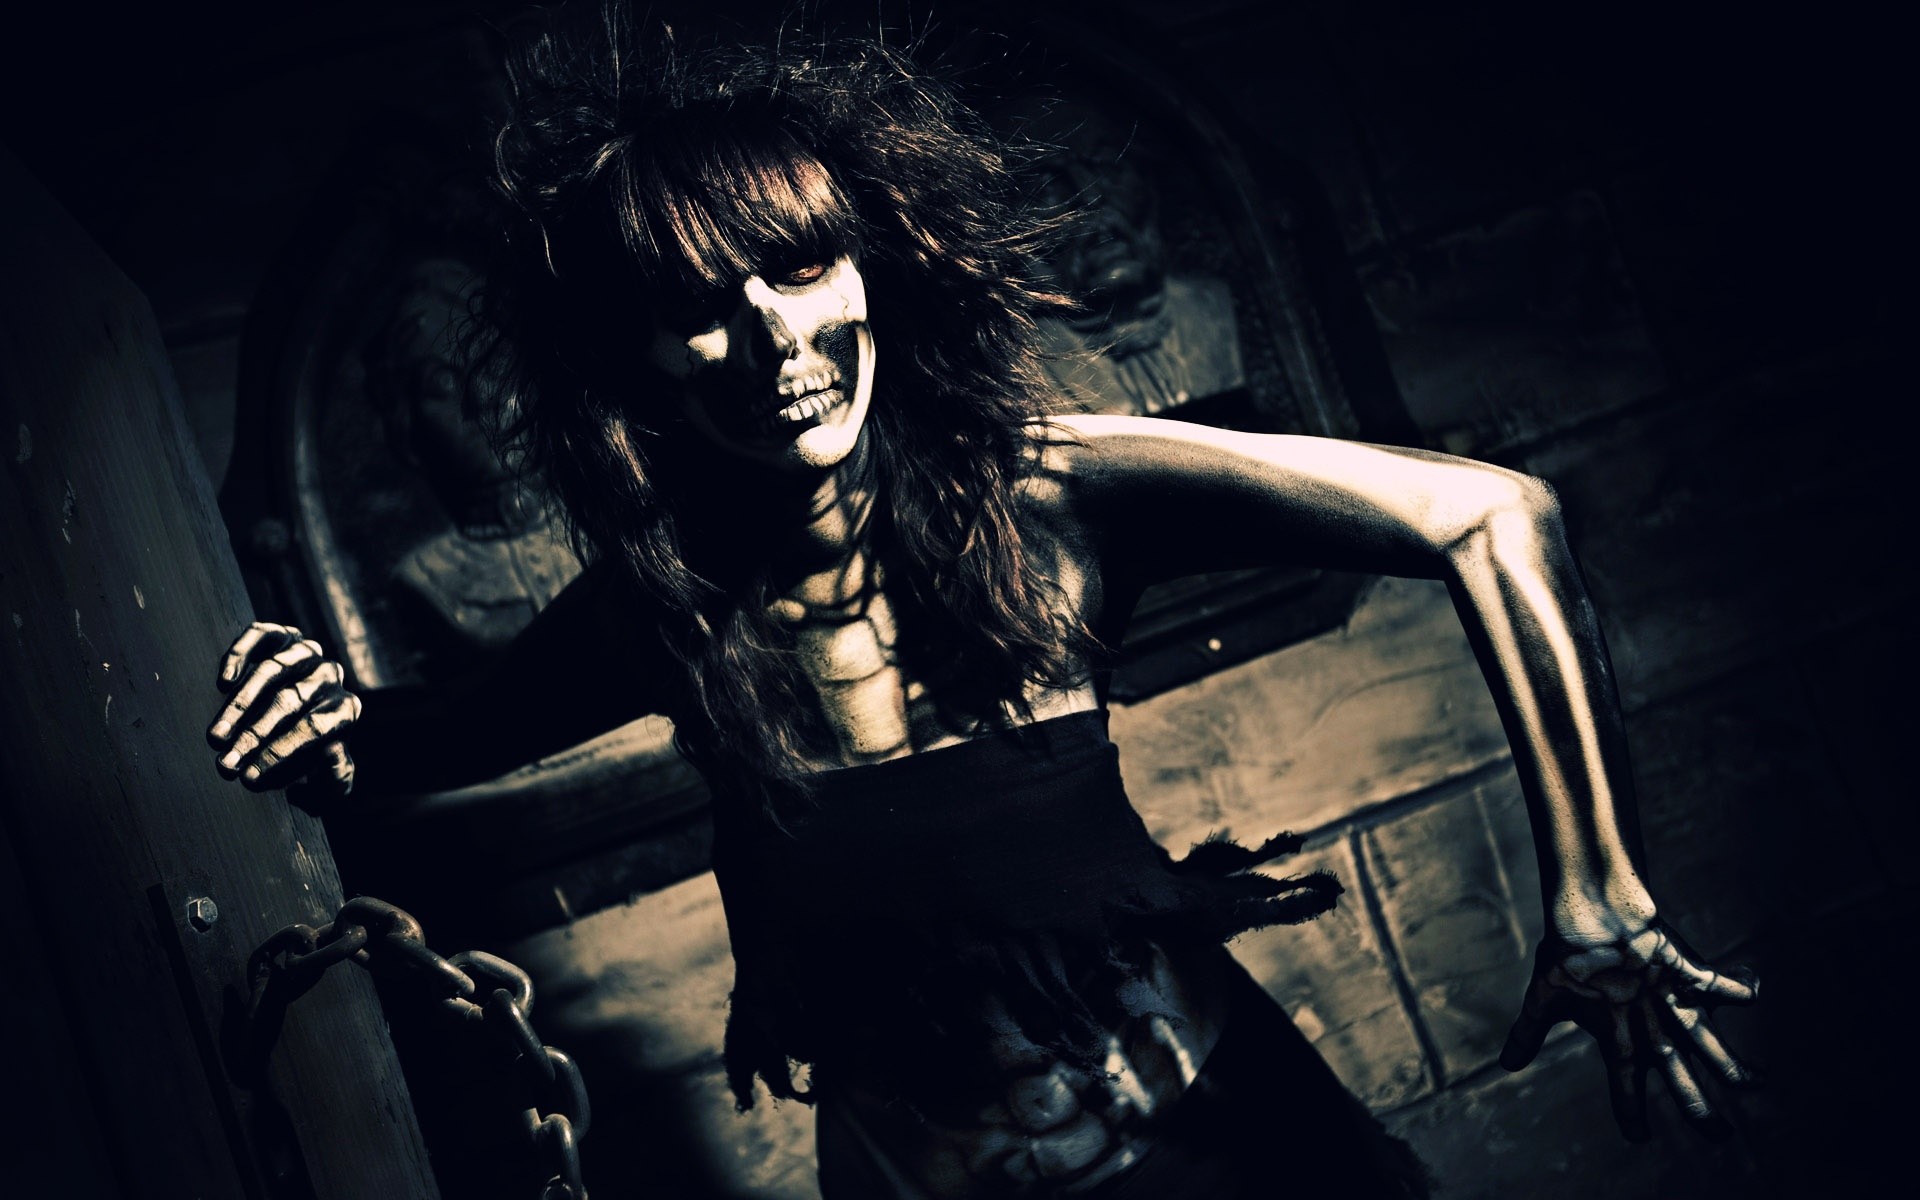 Dark skull skeleton horror scary creepy spooky women brunette bones  wallpaper | | 28211 | WallpaperUP